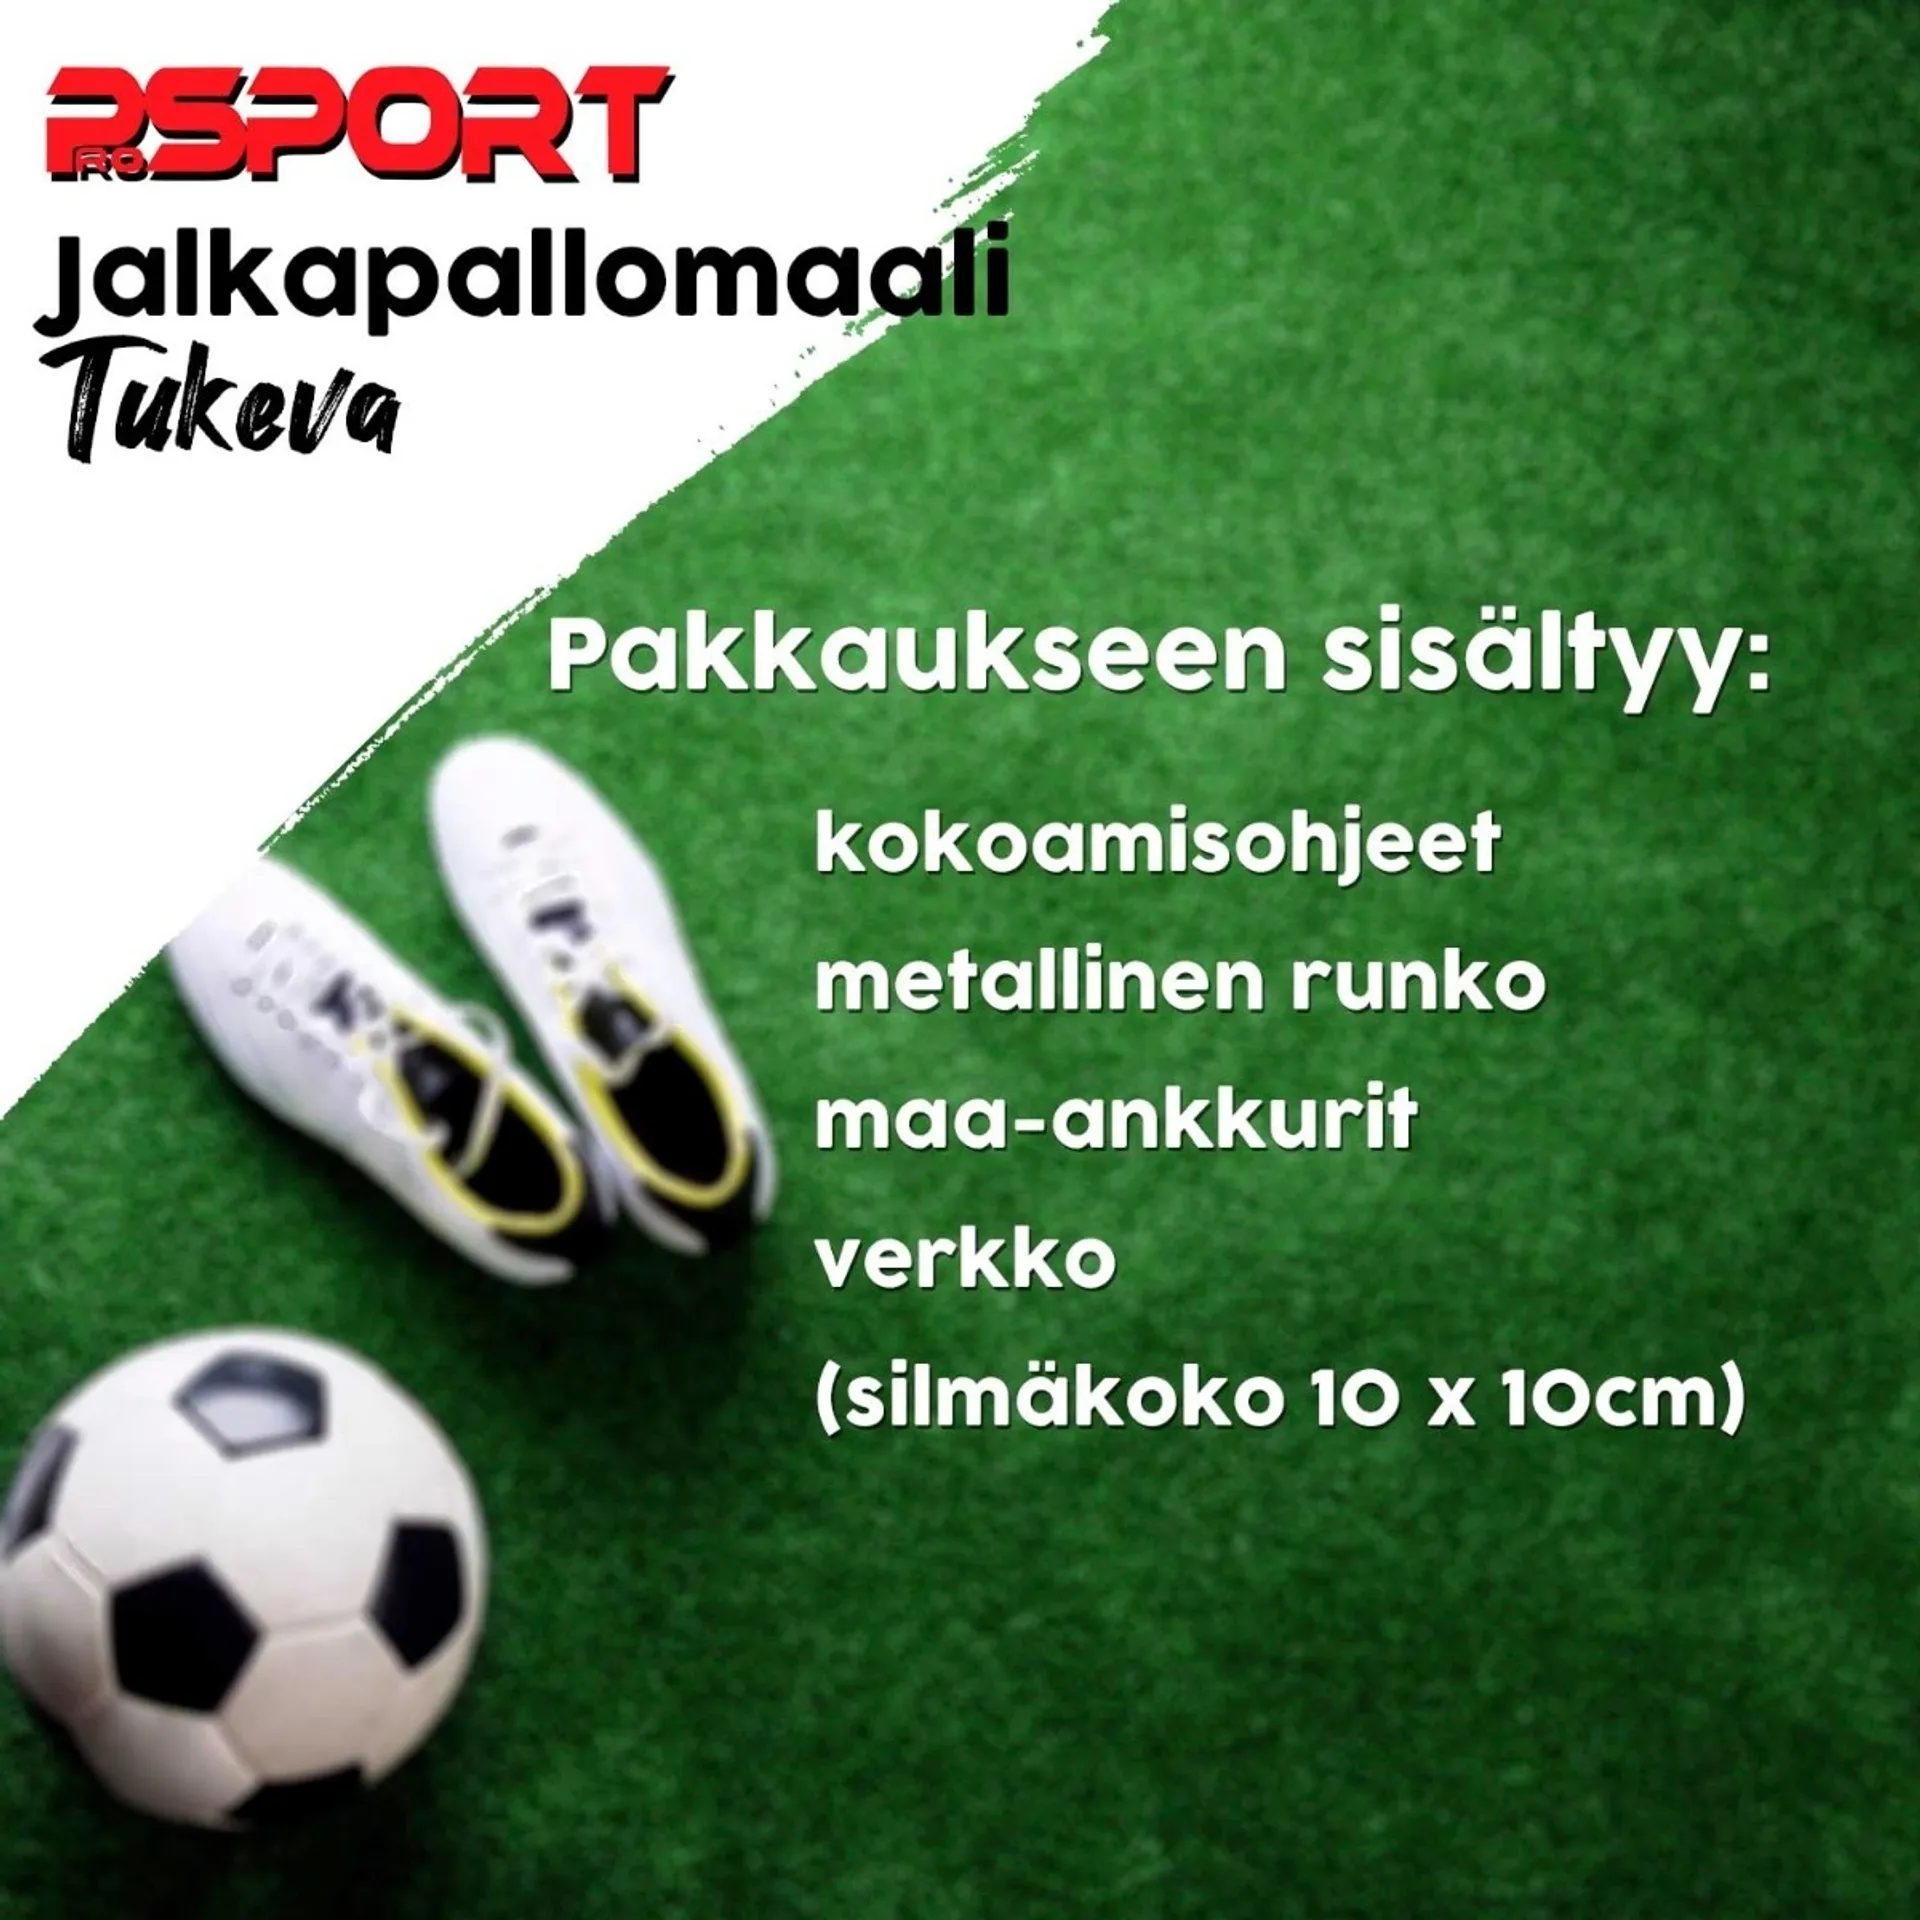 Prosport jalkapallomaali, Tukeva 366 x 198 x 152 cm - 5